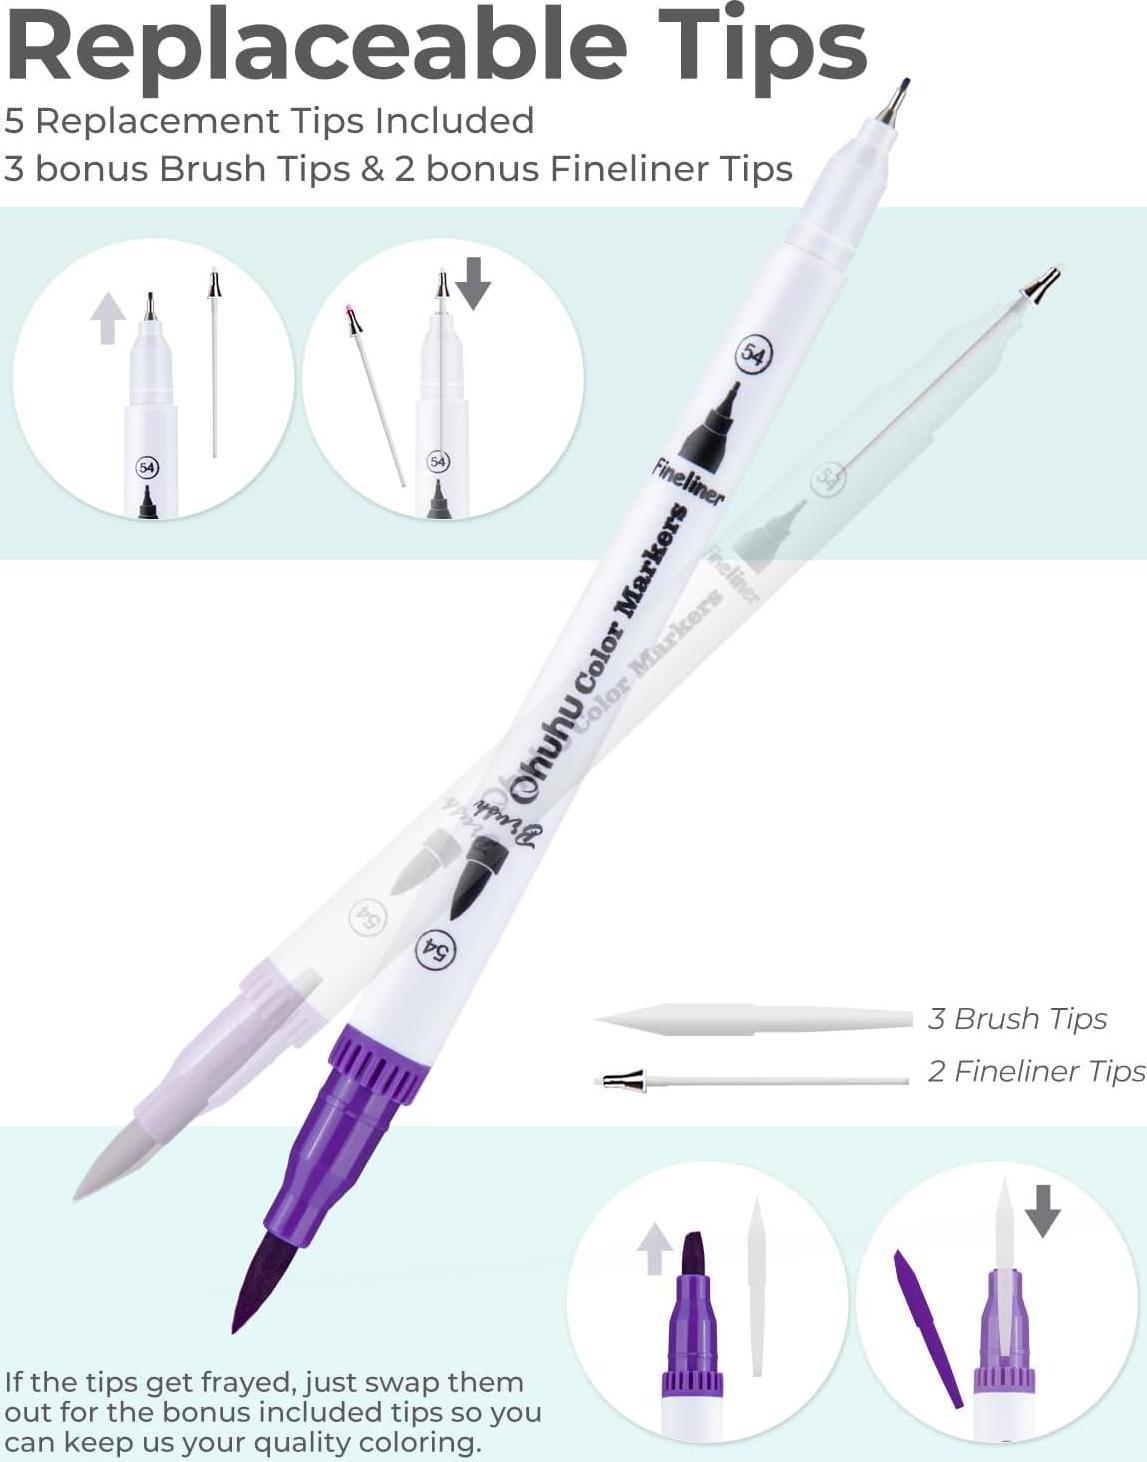  JFSJDF Dual Brush Marker Pens for Coloring, Artist